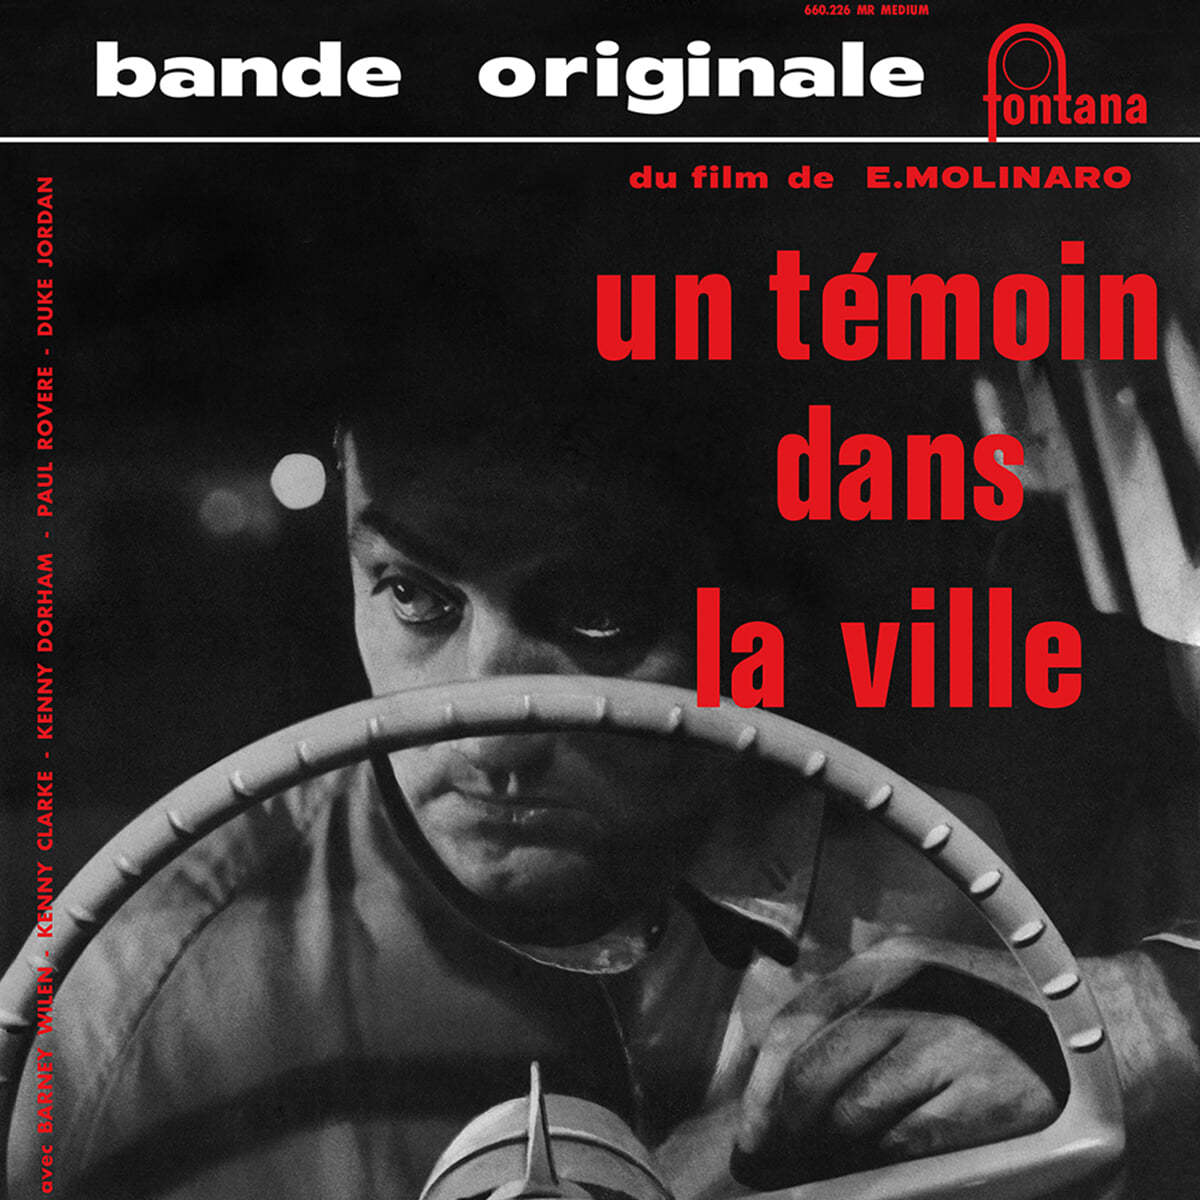 도시의 증인 영화음악 (Un temoin dans la ville OST by Barney Wilen) [10인치 Vinyl]